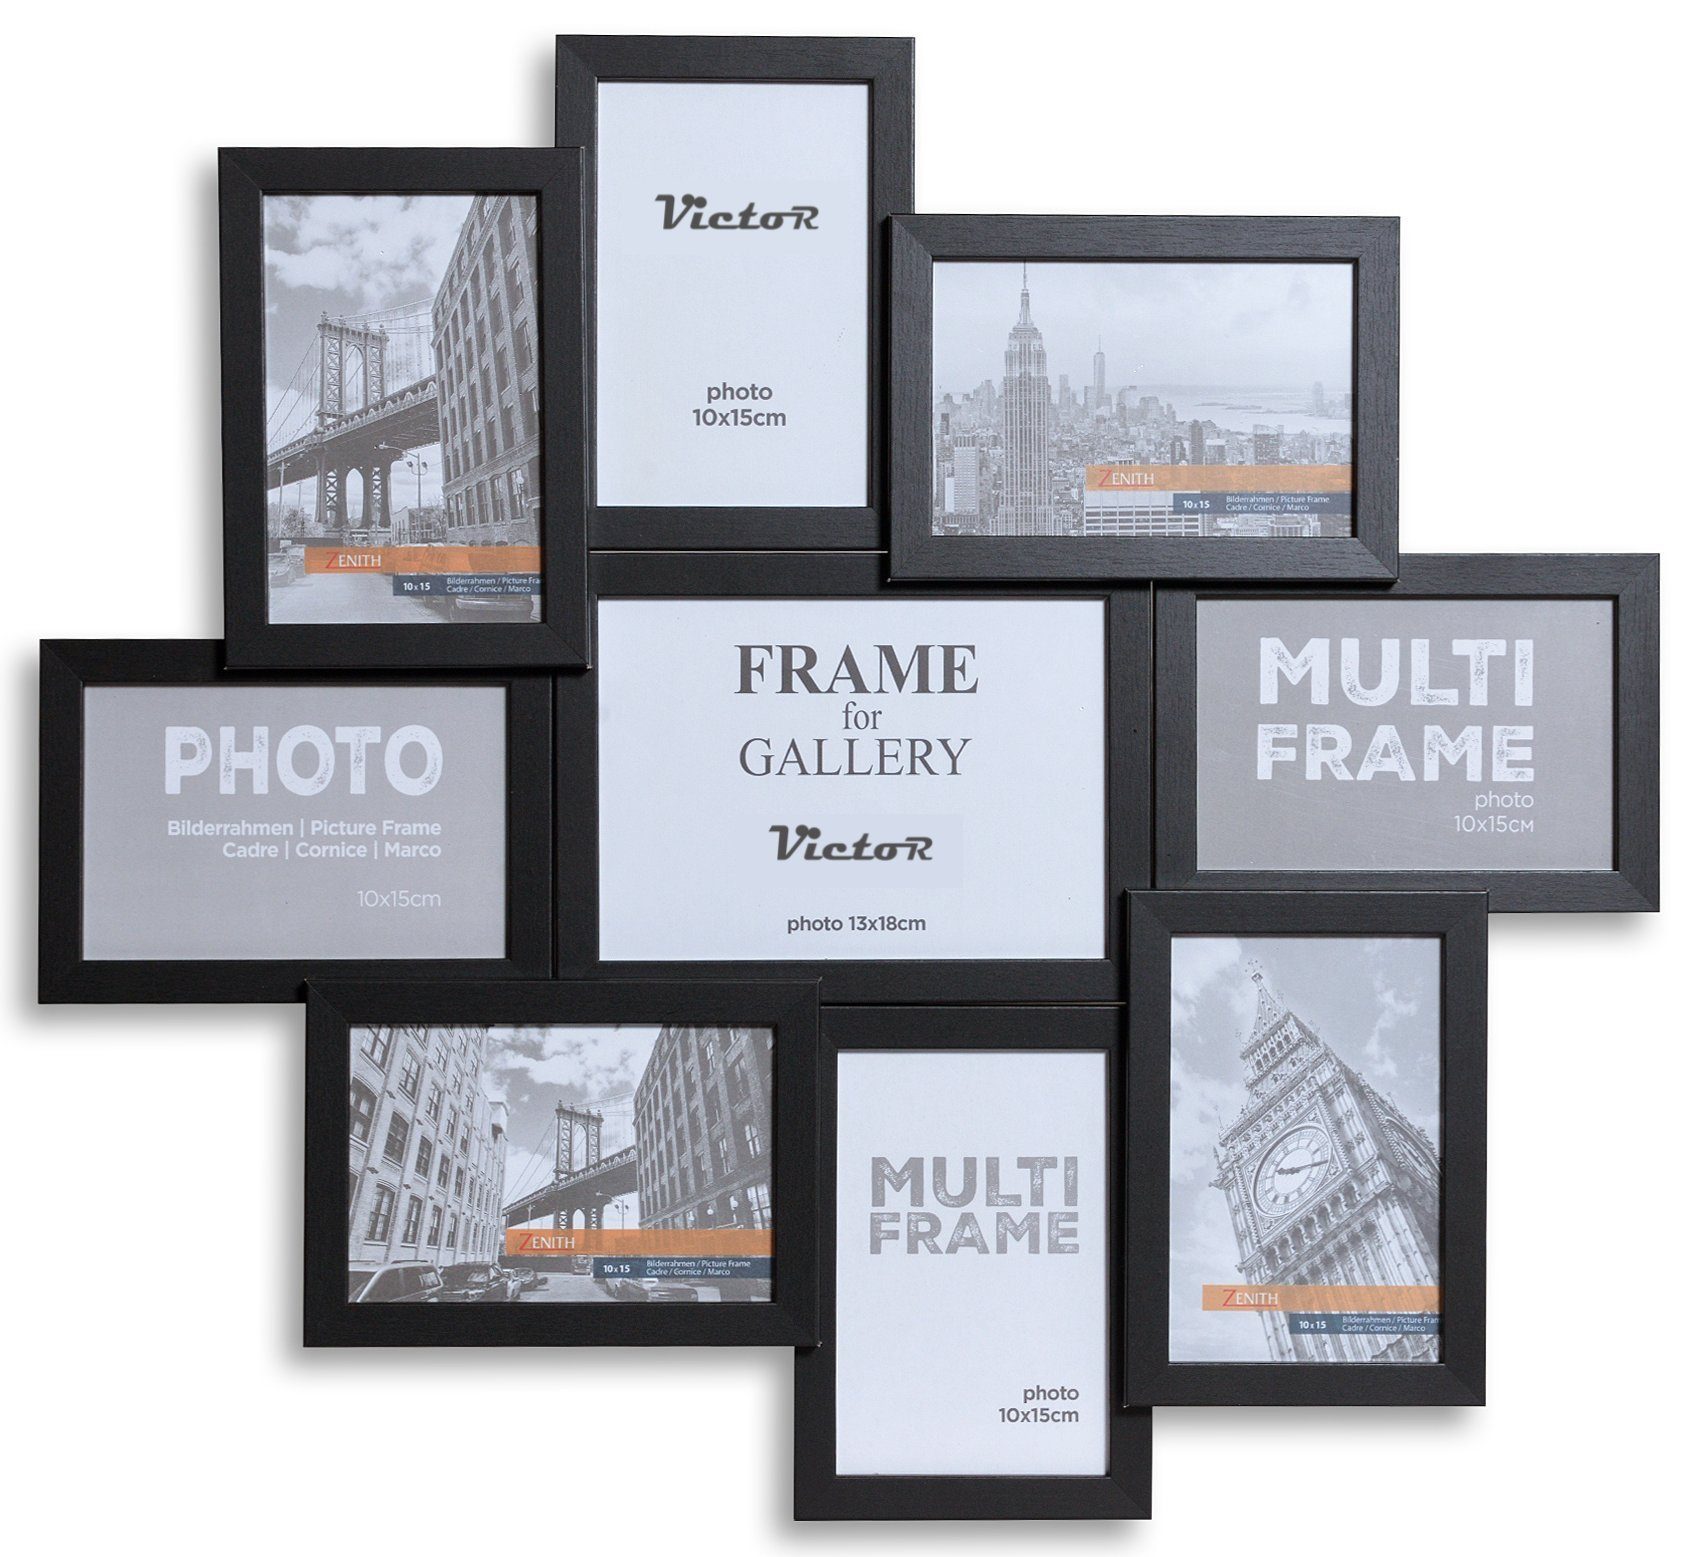 Victor (Zenith) Bilderrahmen Collage Galerierahmen, für 9 Bilder, 8 x 10x15cm, 1 x 13x18cm, in schwarz, Wanddeko